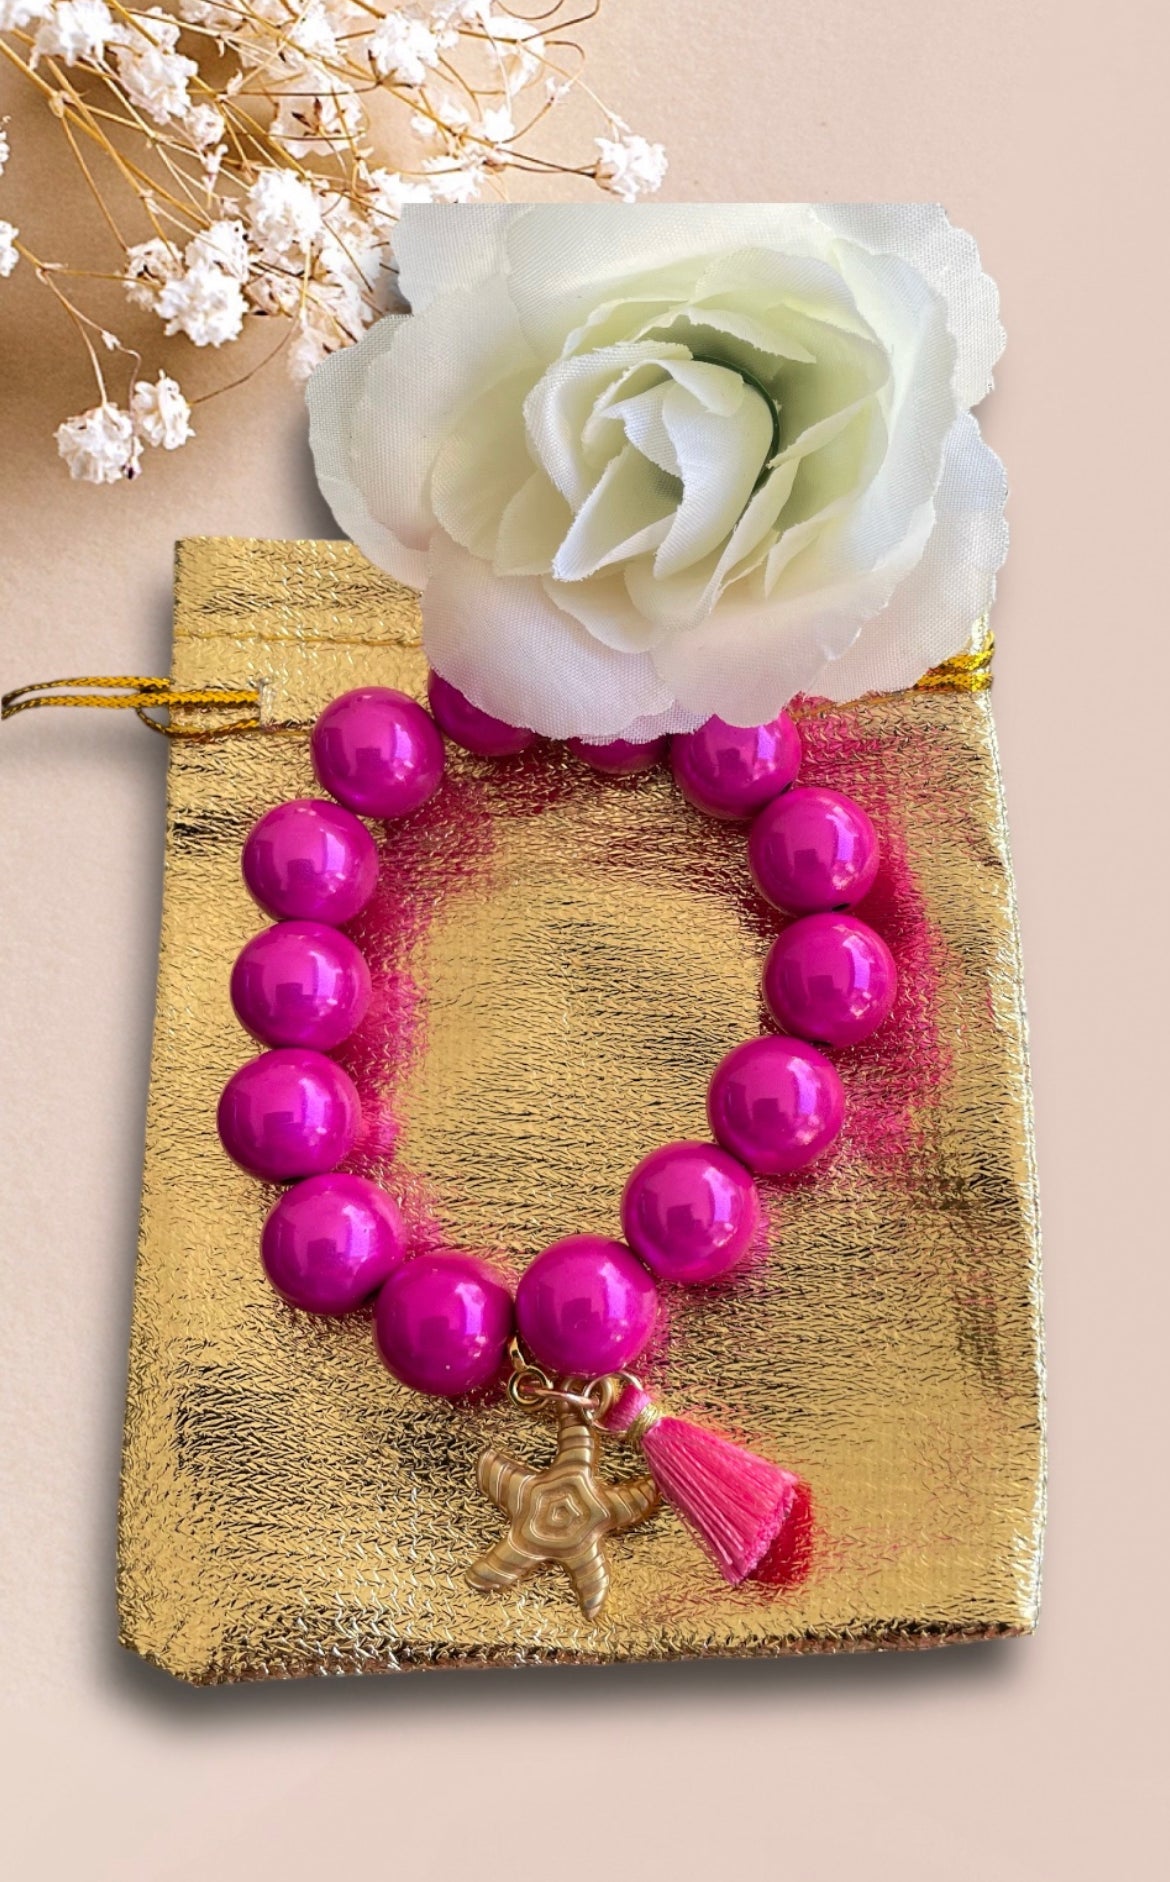 Armband ARISARA aus Miracle Perlen in pink und einem Anhänger Seestern der Firma SchauTime